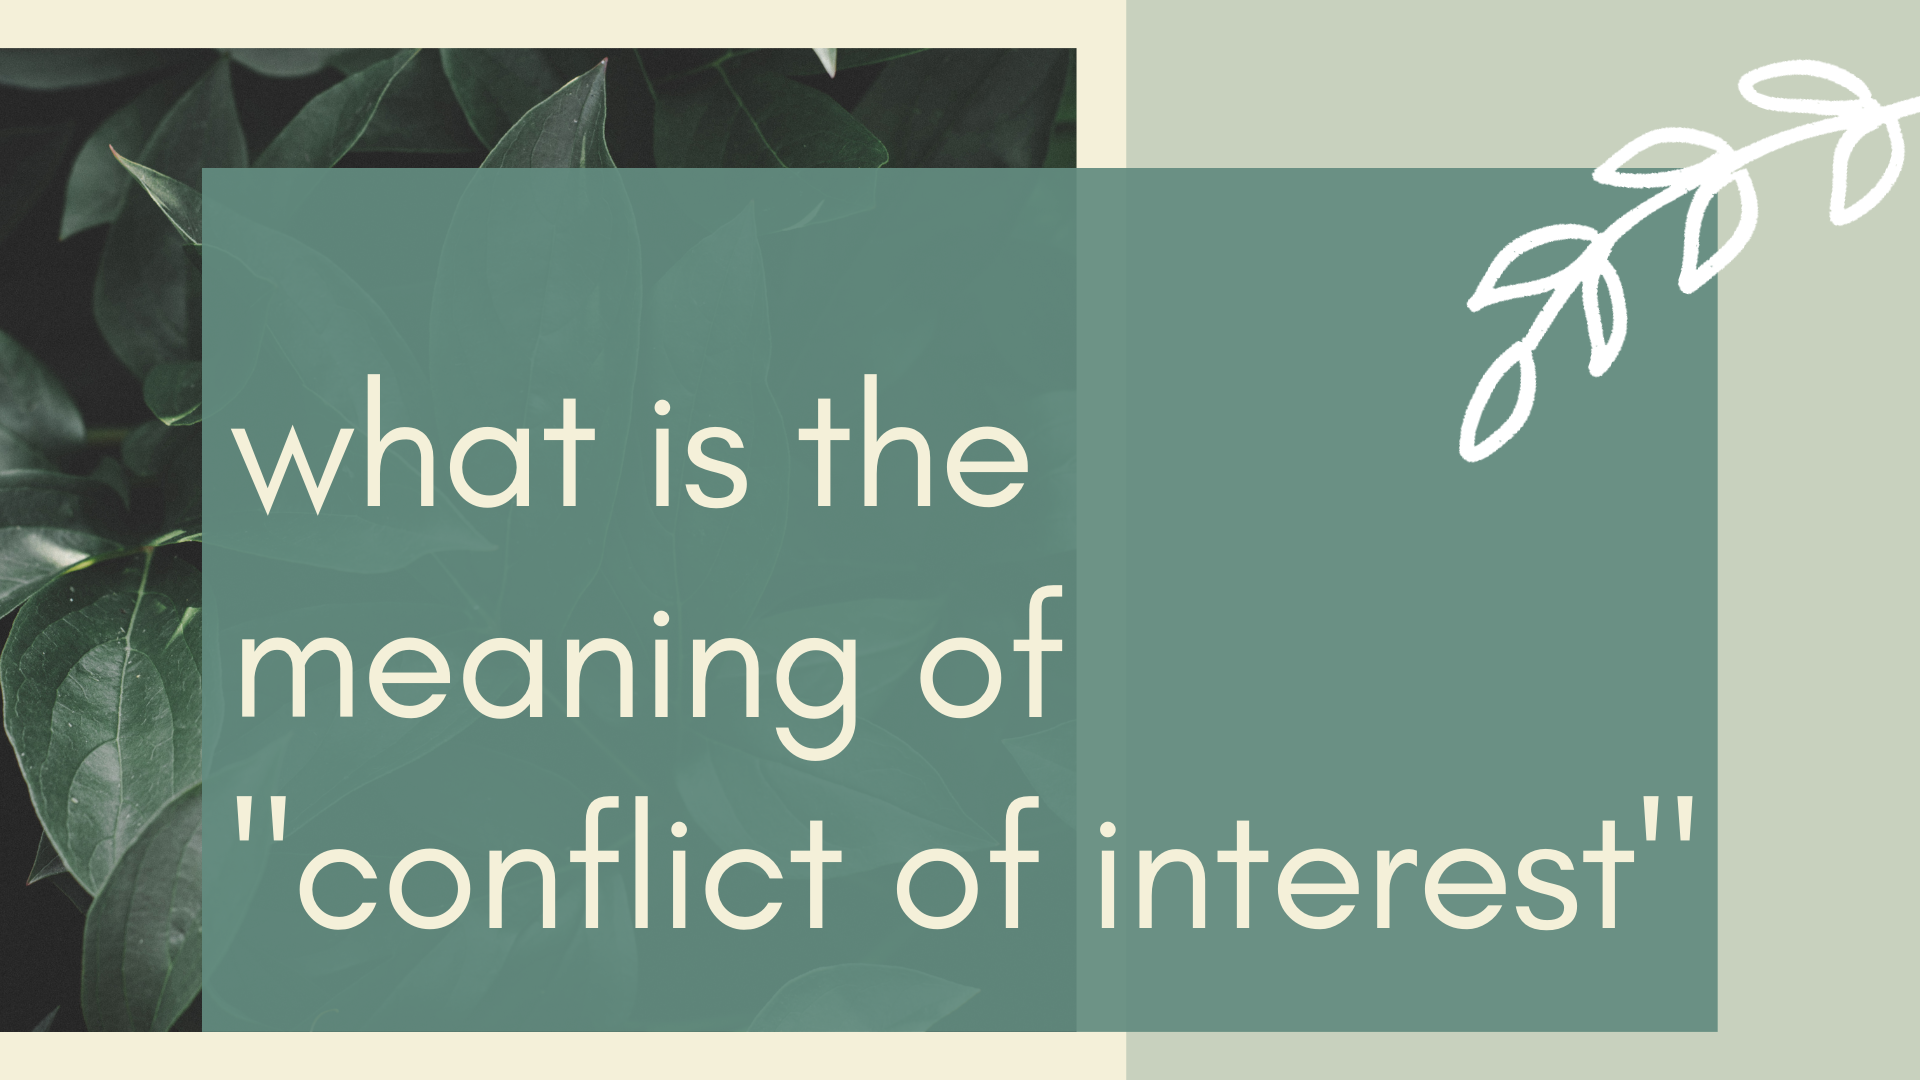 conflict of interest là gì